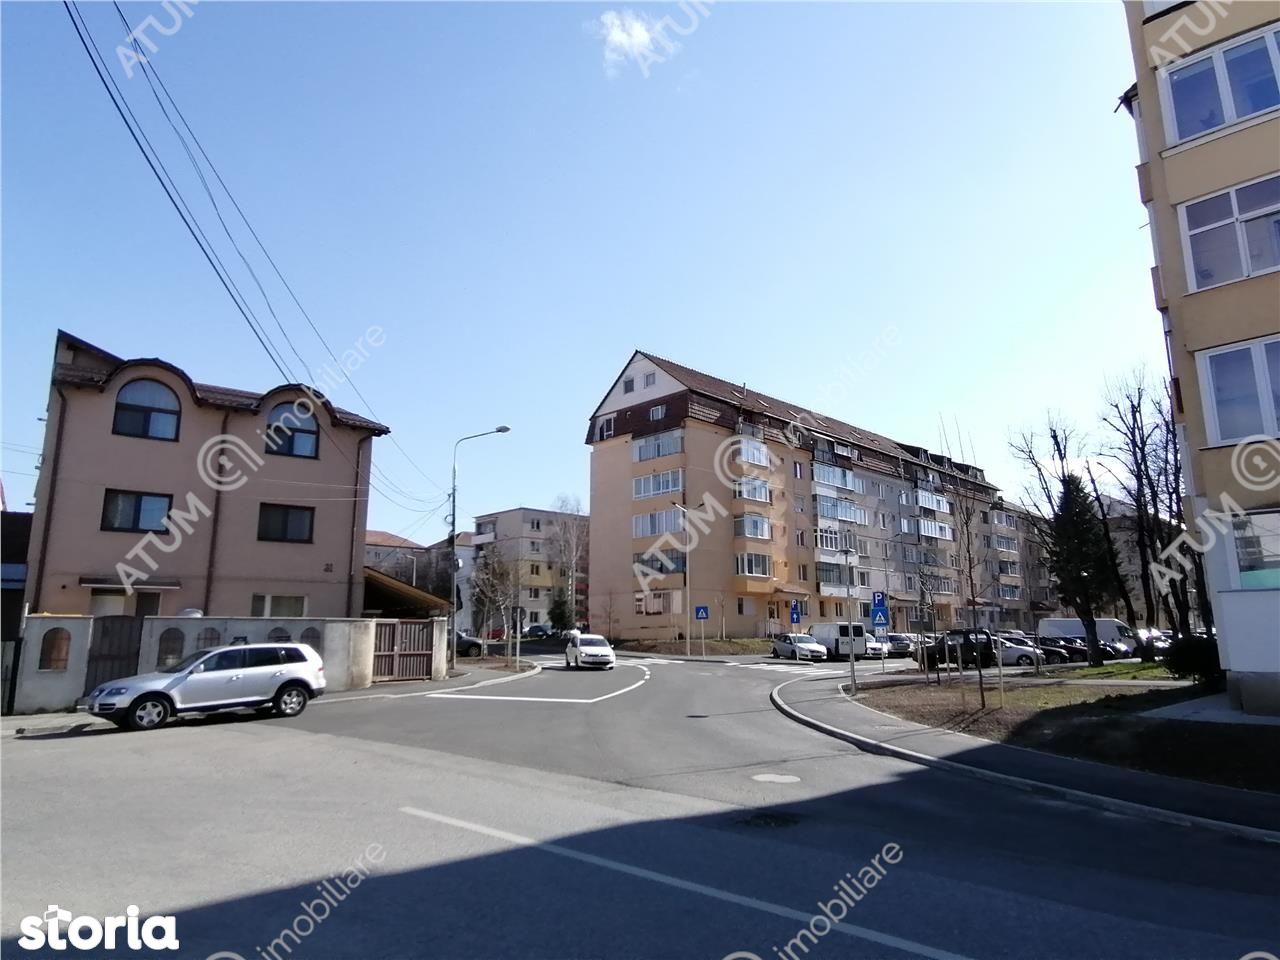 Apartament modern cu 2 camere in zona Cedonia din Sibiu